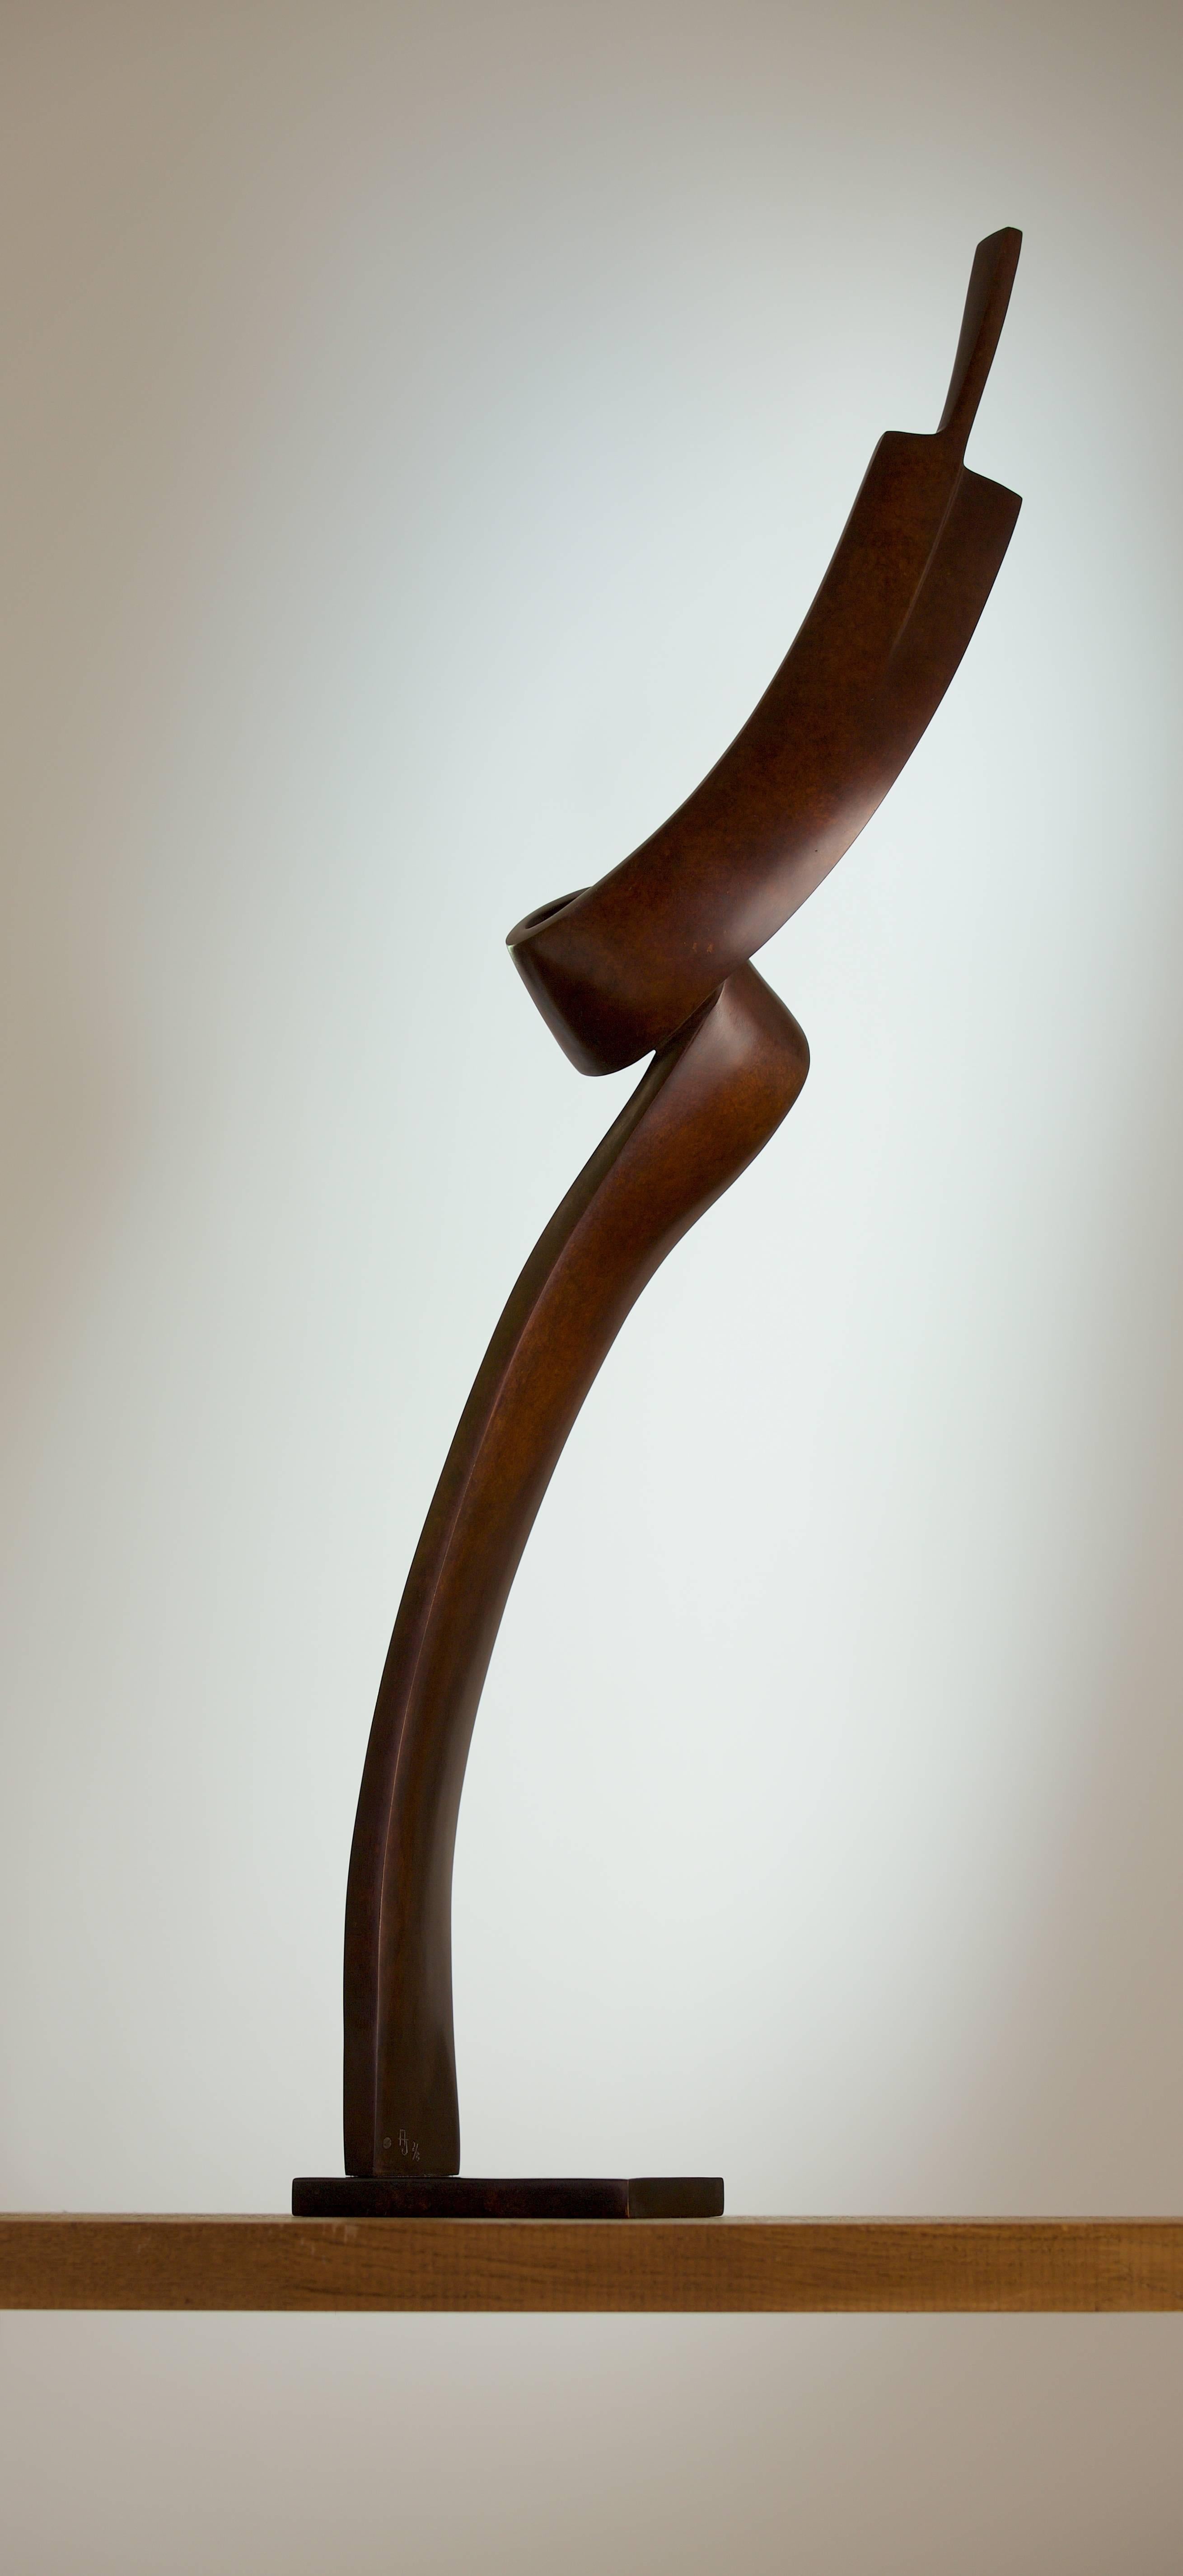 Ruban – Sculpture von Annette Jalilova